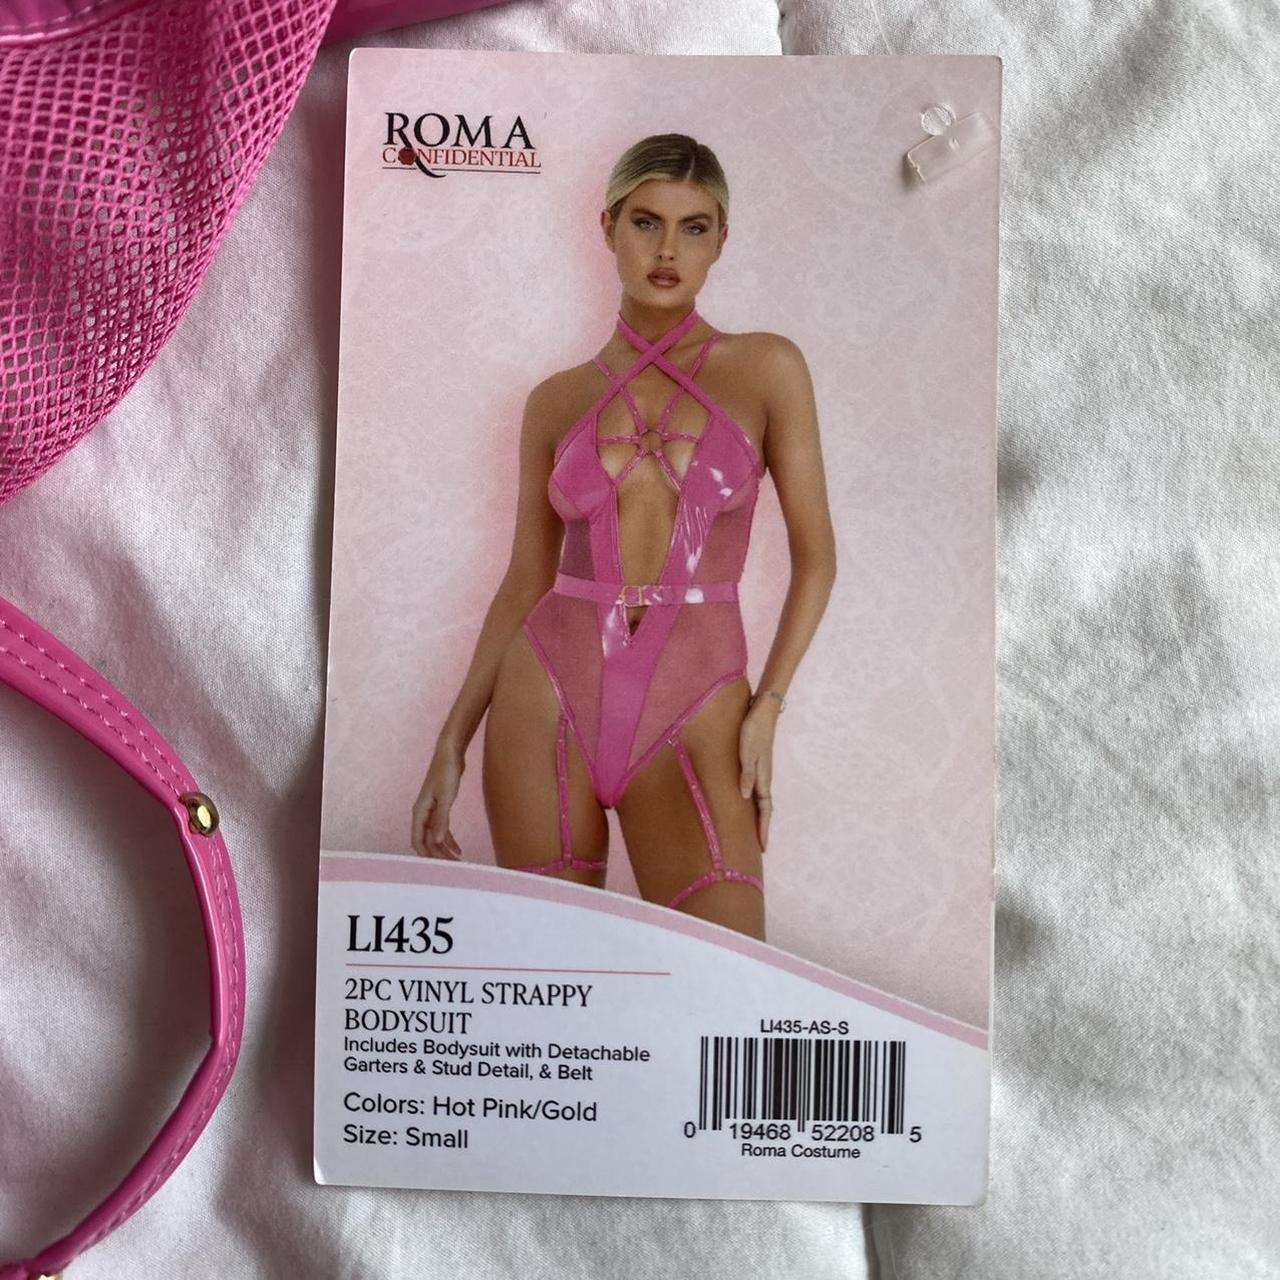 LI435, Vinyl Strappy Bodysuit by Roma